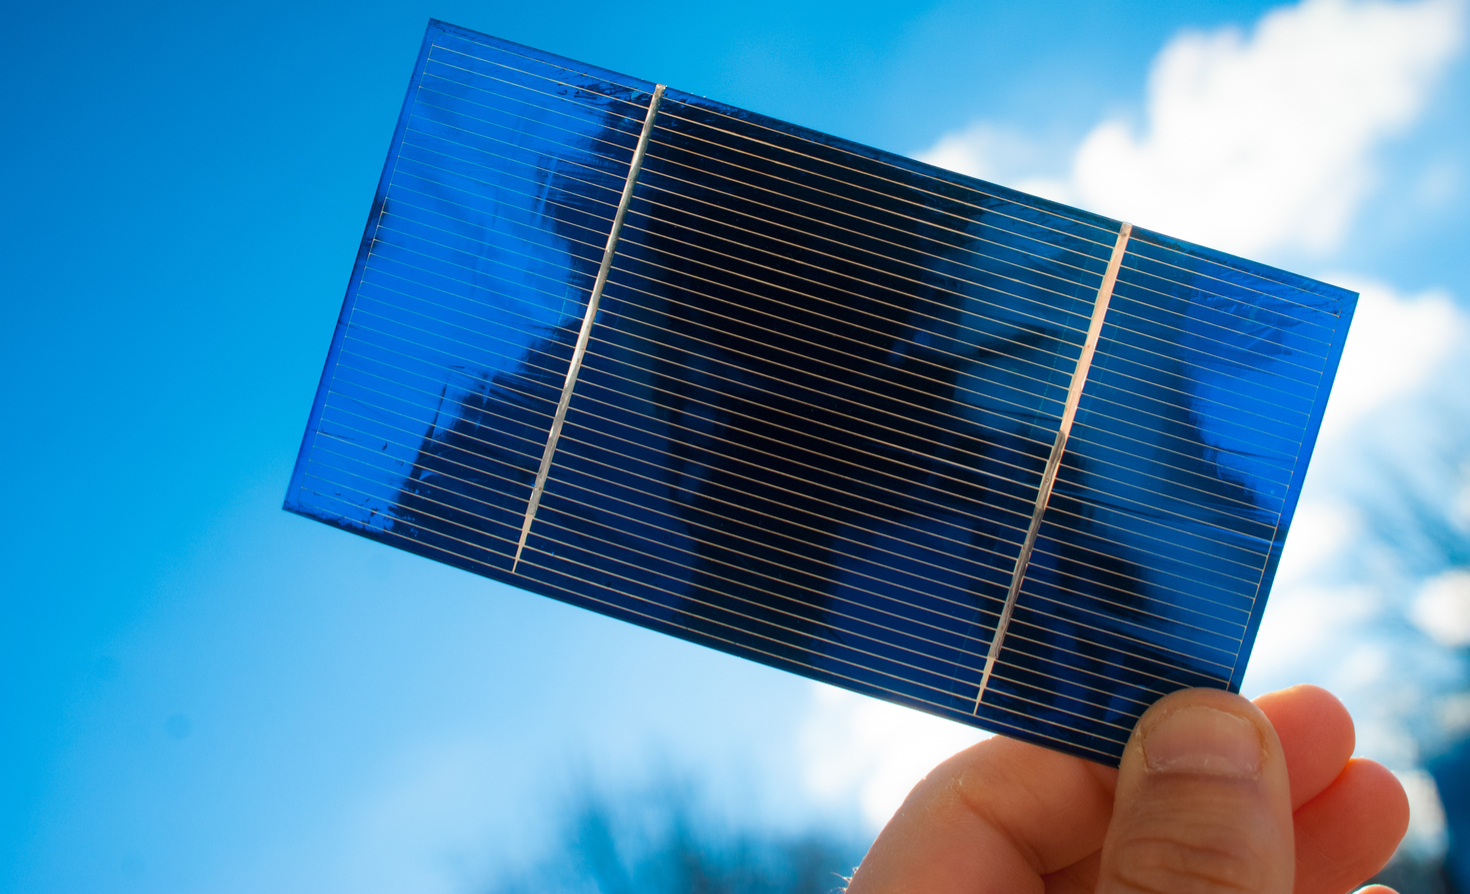 How Do Solar Cells Work